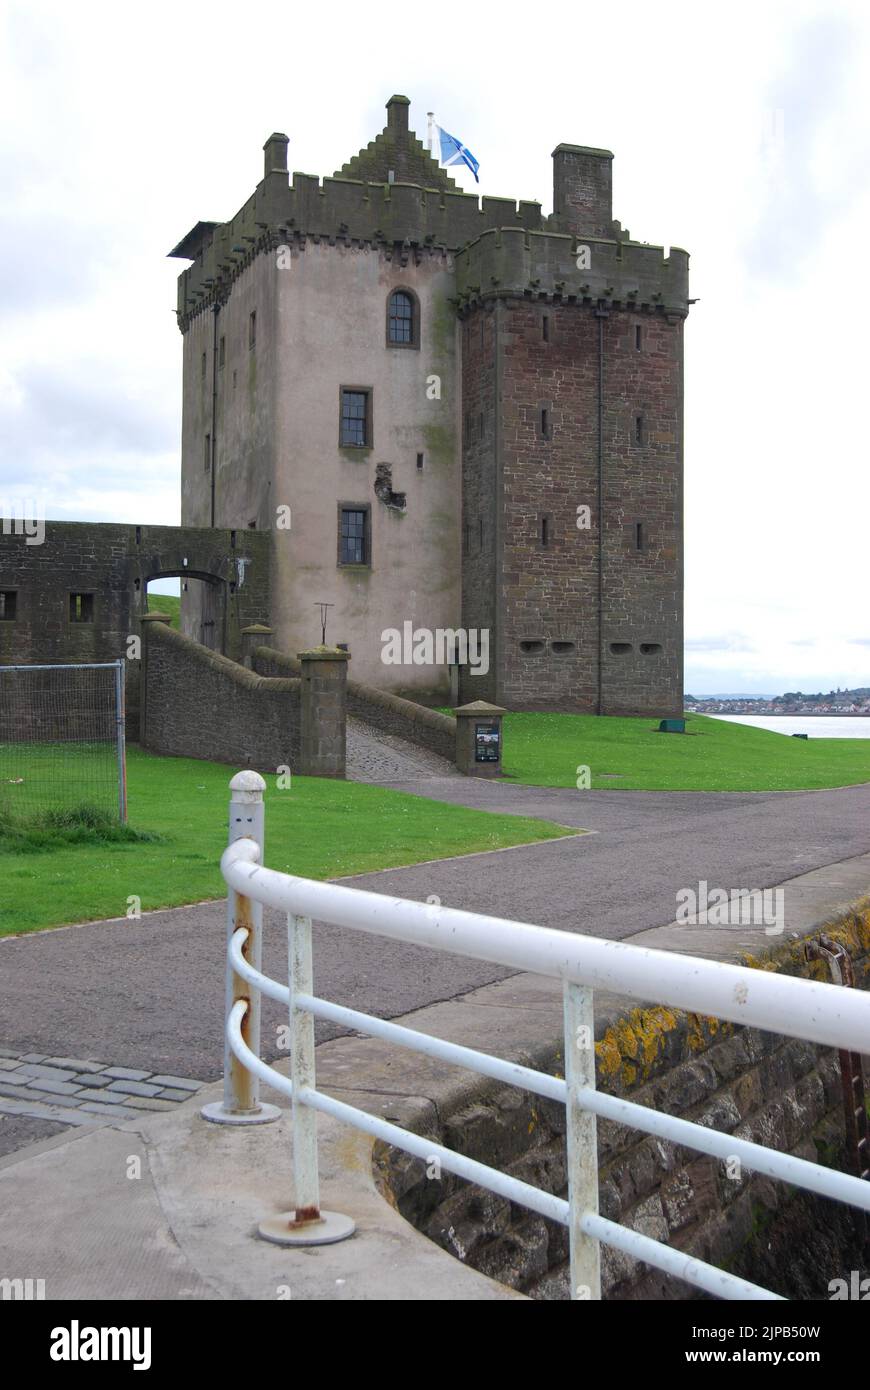 Broughty Castle, mit weißen Geländern im Vordergrund und einer fliegenden Saltire-Flagge, liegt an der Mündung der Tay-Mündung bei Broughty Ferry, in der Nähe von Dundee. Stockfoto